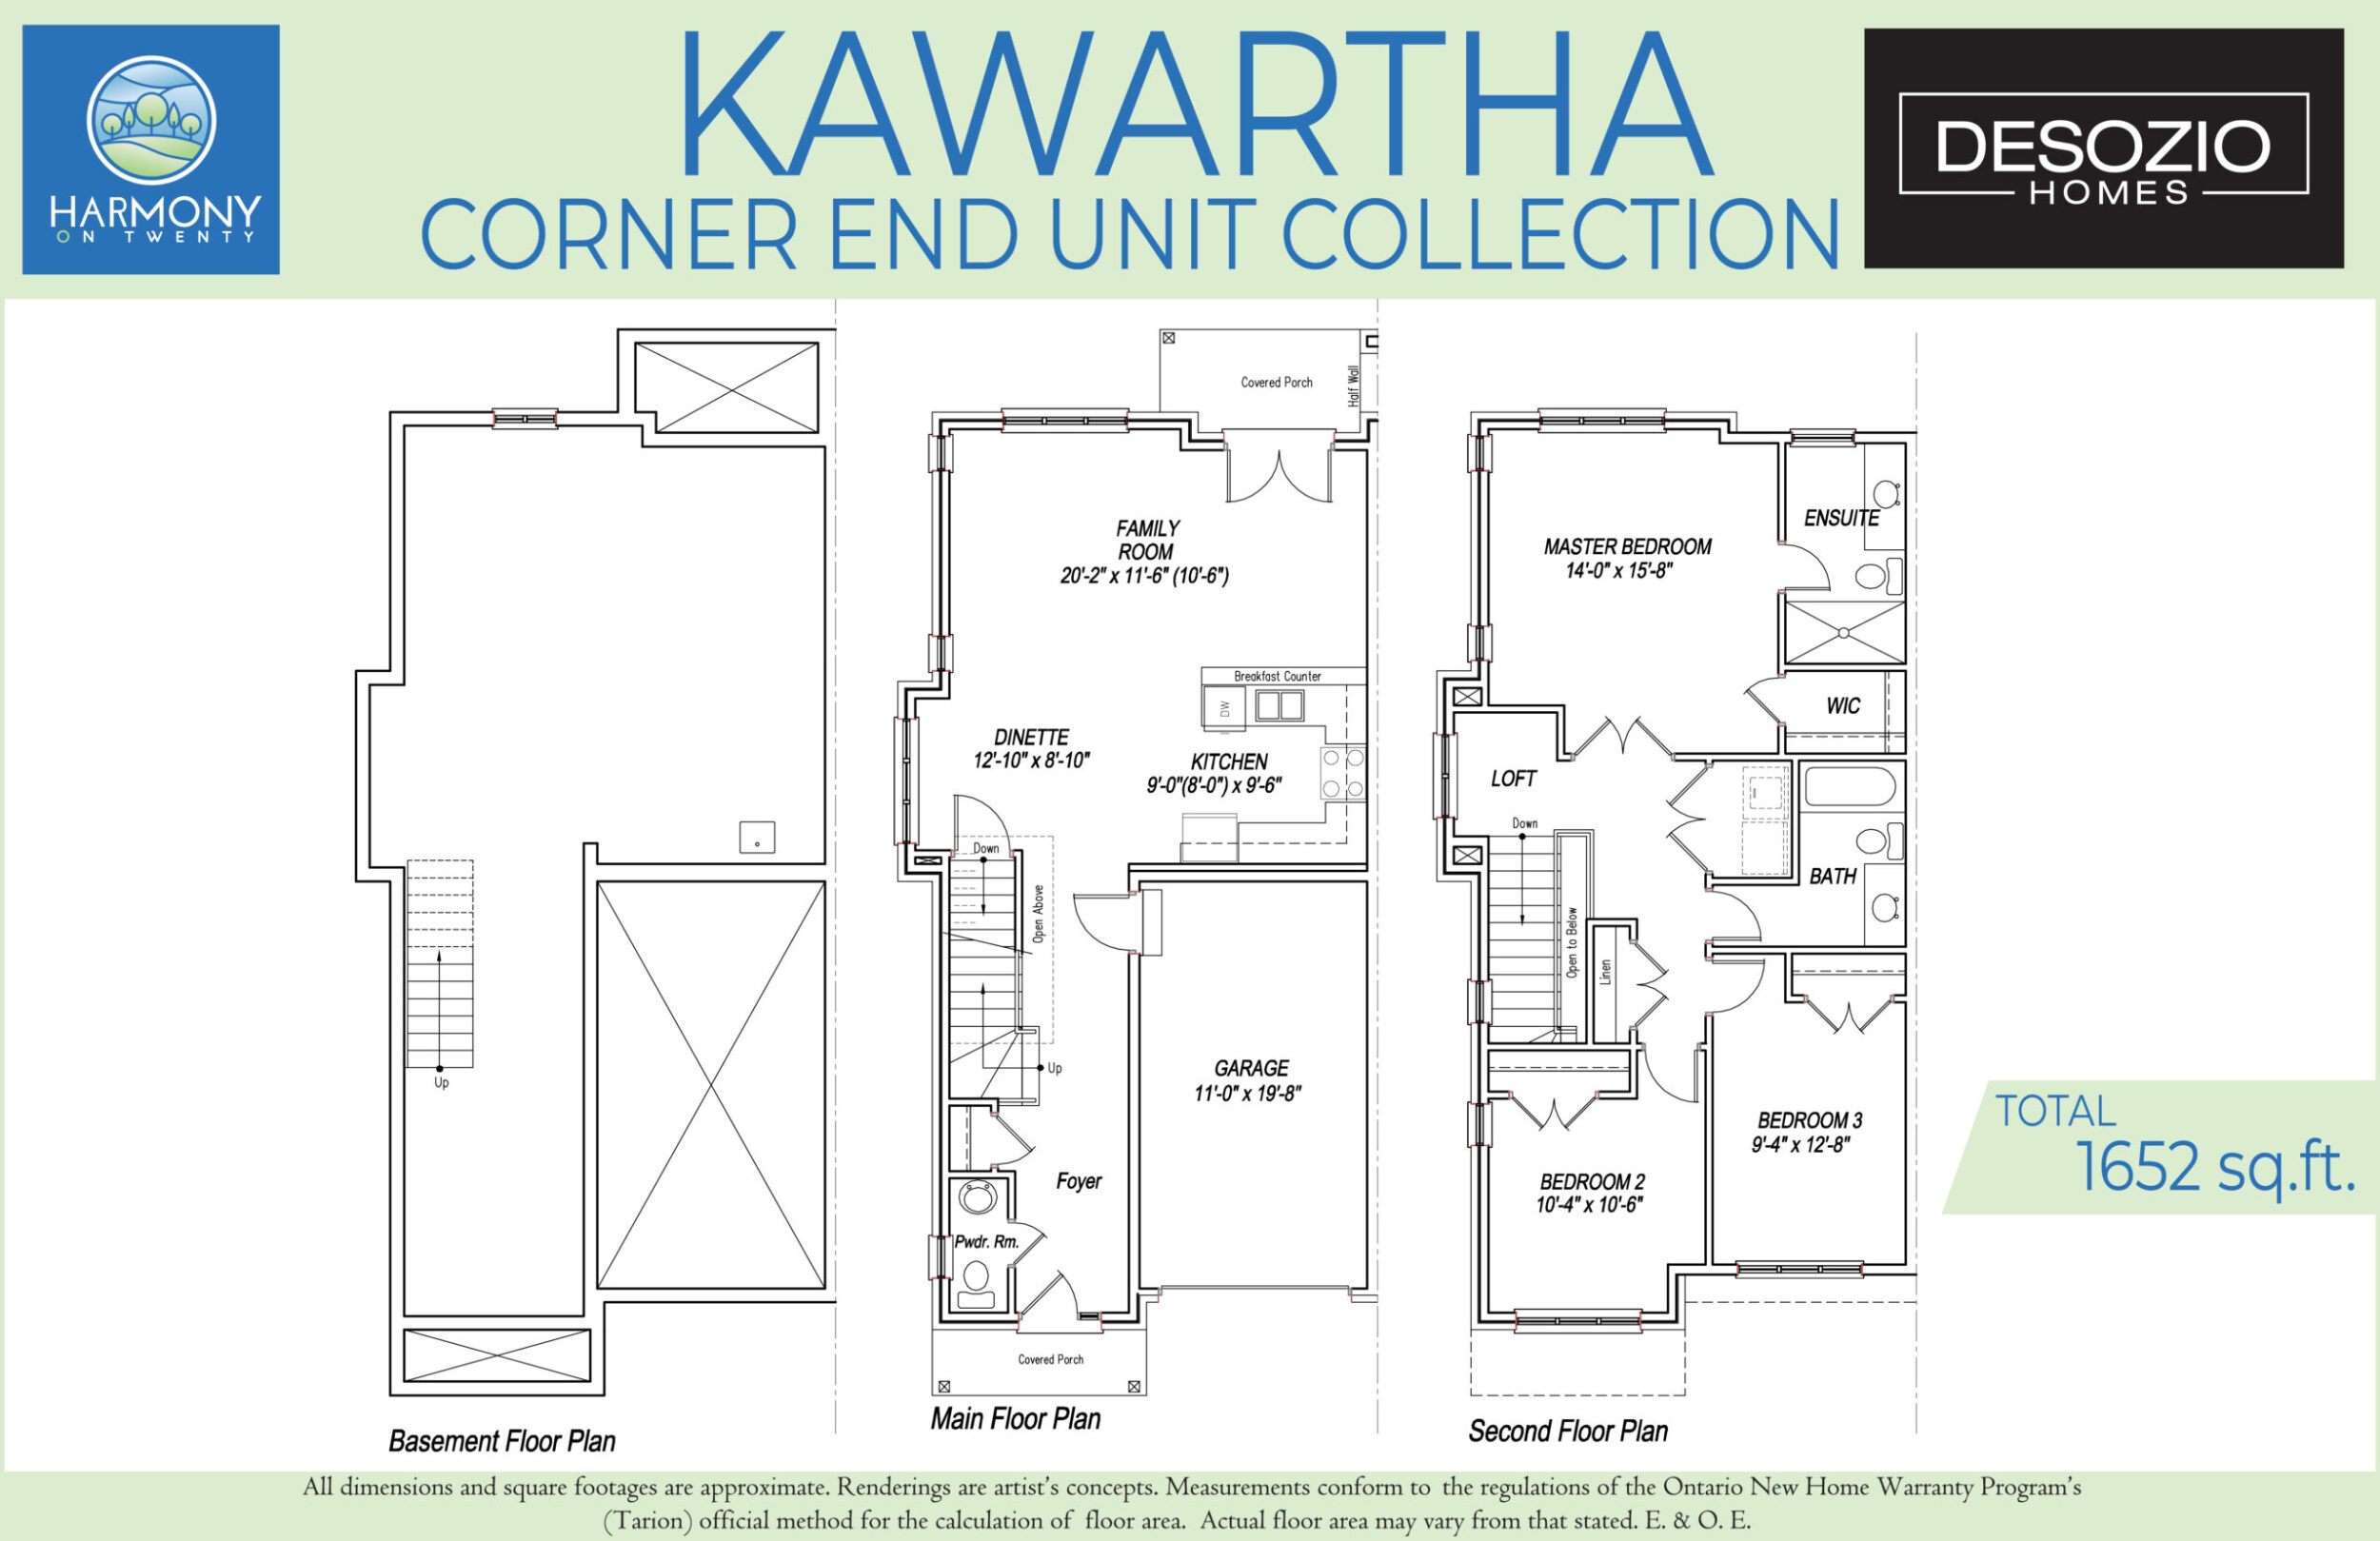 Kawartha floor plan rendering corner